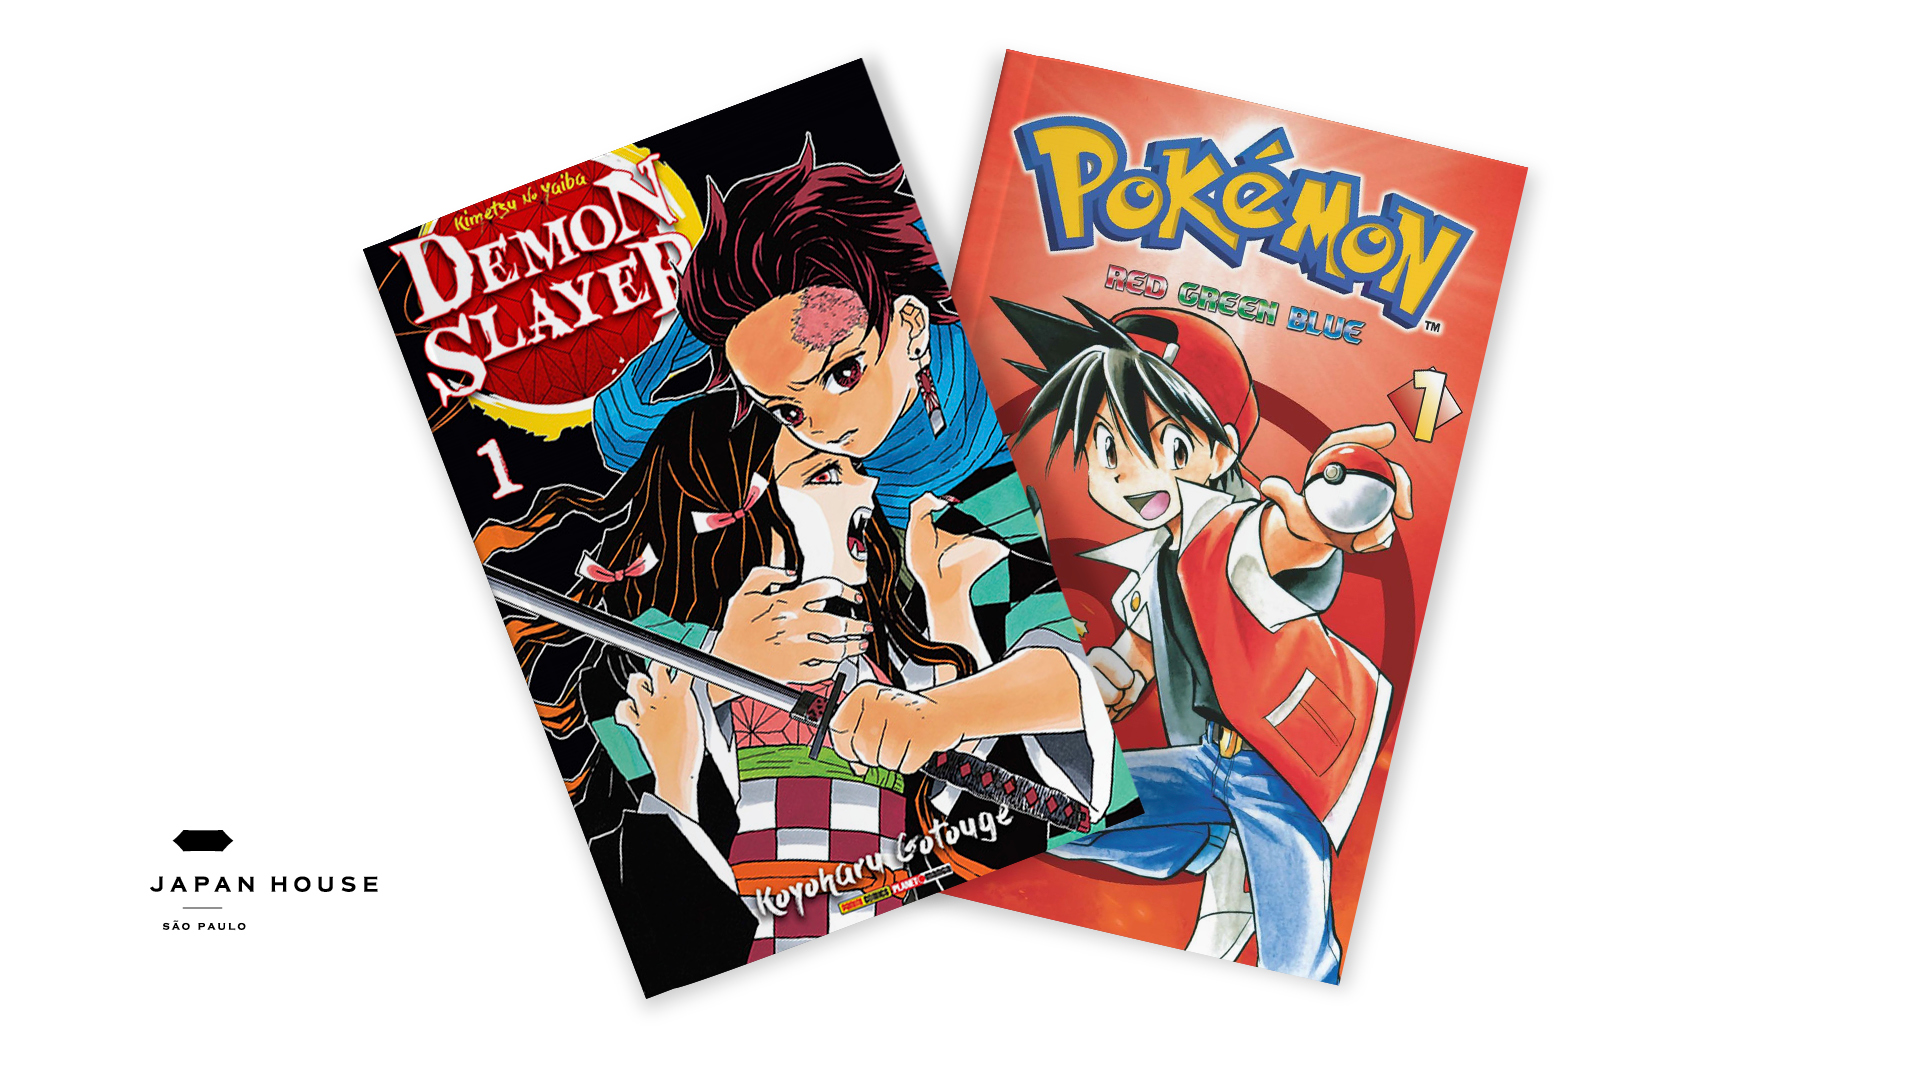 Imagem da capa de dois mangás em fundo branco: Demon Slayer, de Koyoharu Gotouge e Pokemon RGB, de Hidenori Kusaka e Mato